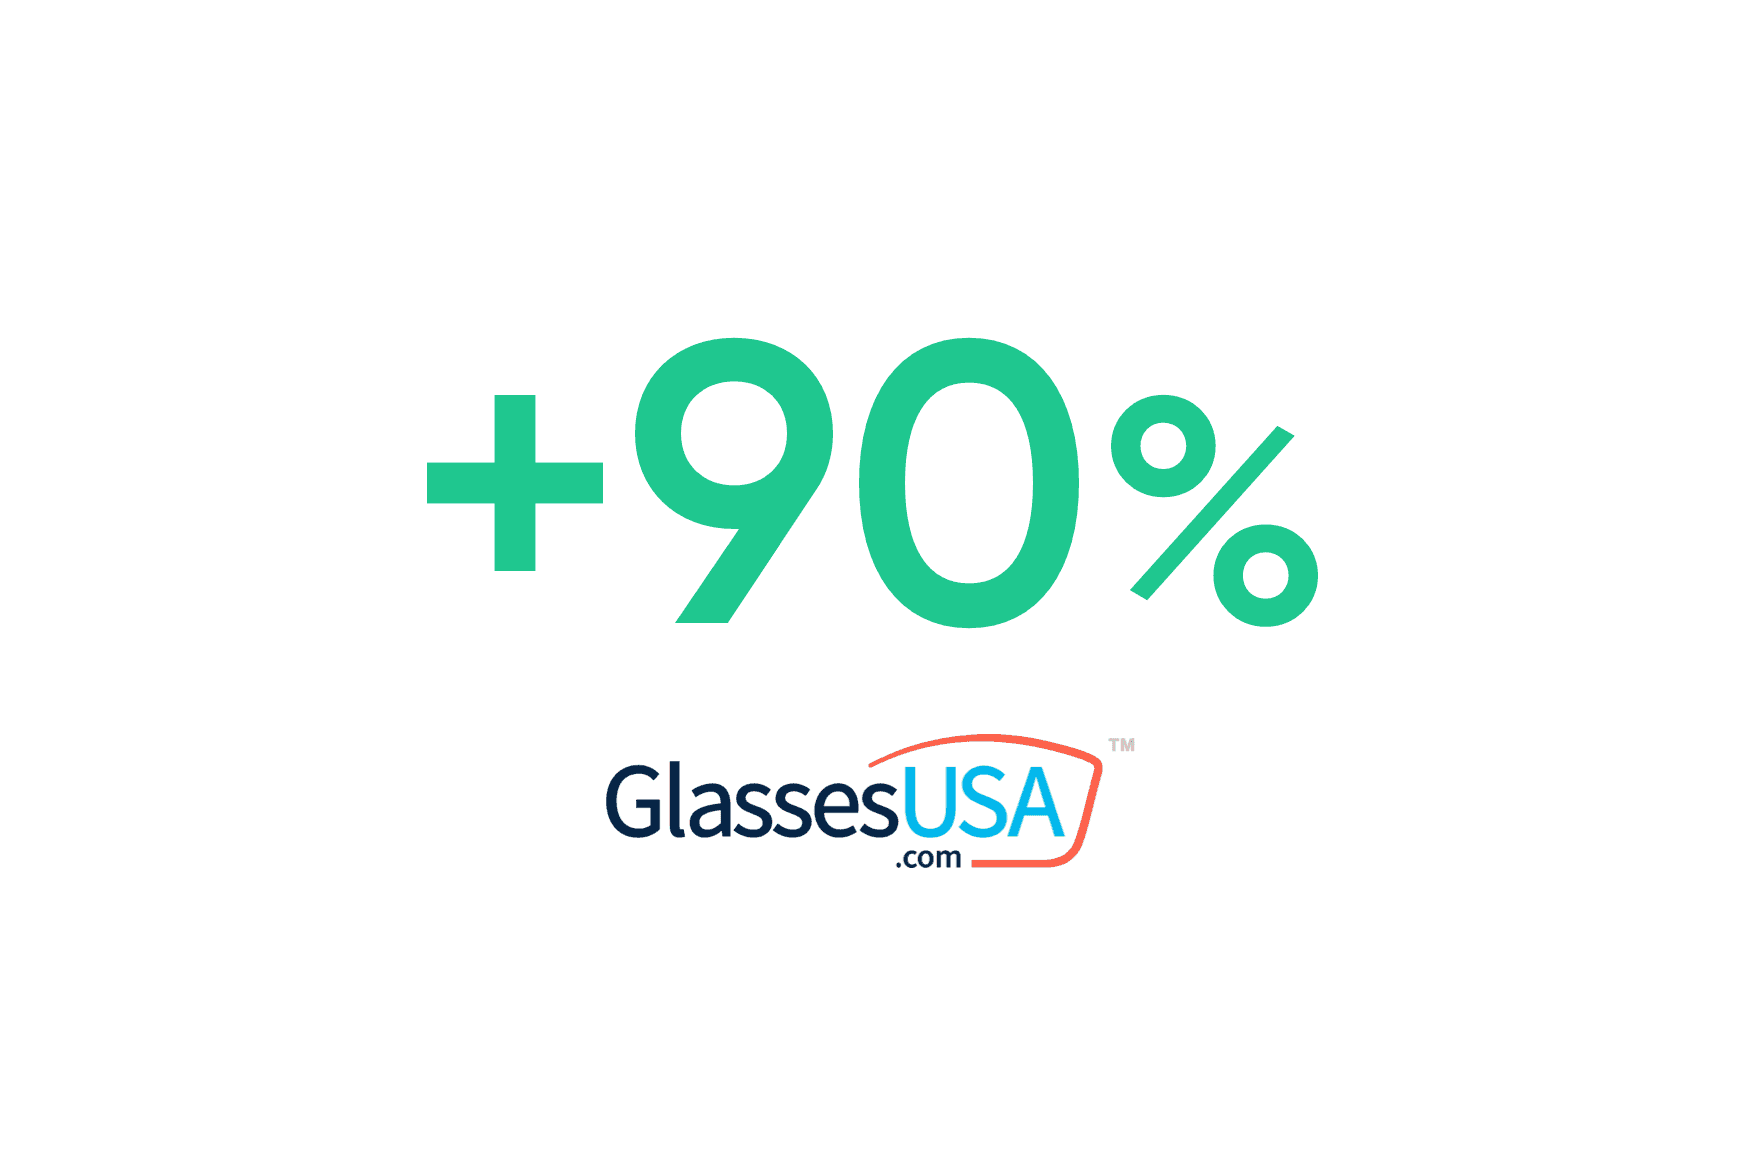 Glasses USA: Aumento da taxa de recolha para 90%